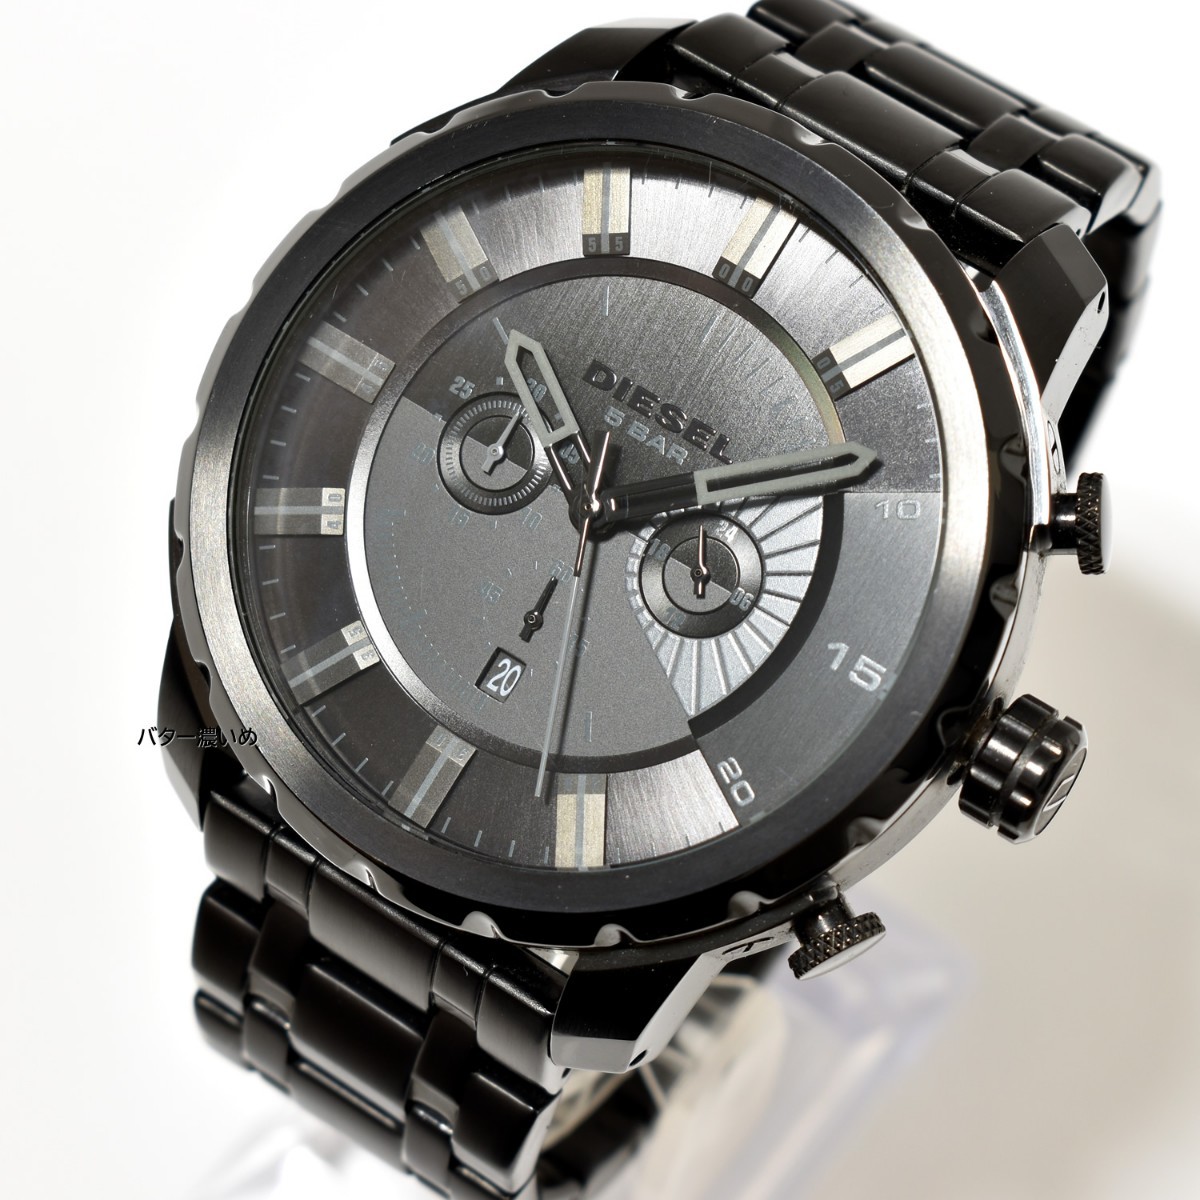 ディーゼル DIESEL メンズ腕時計 ストロングホールド ブラック DZ4349 クオーツ クロノグラフ ステンレスベルト 中古品 箱なし_画像2